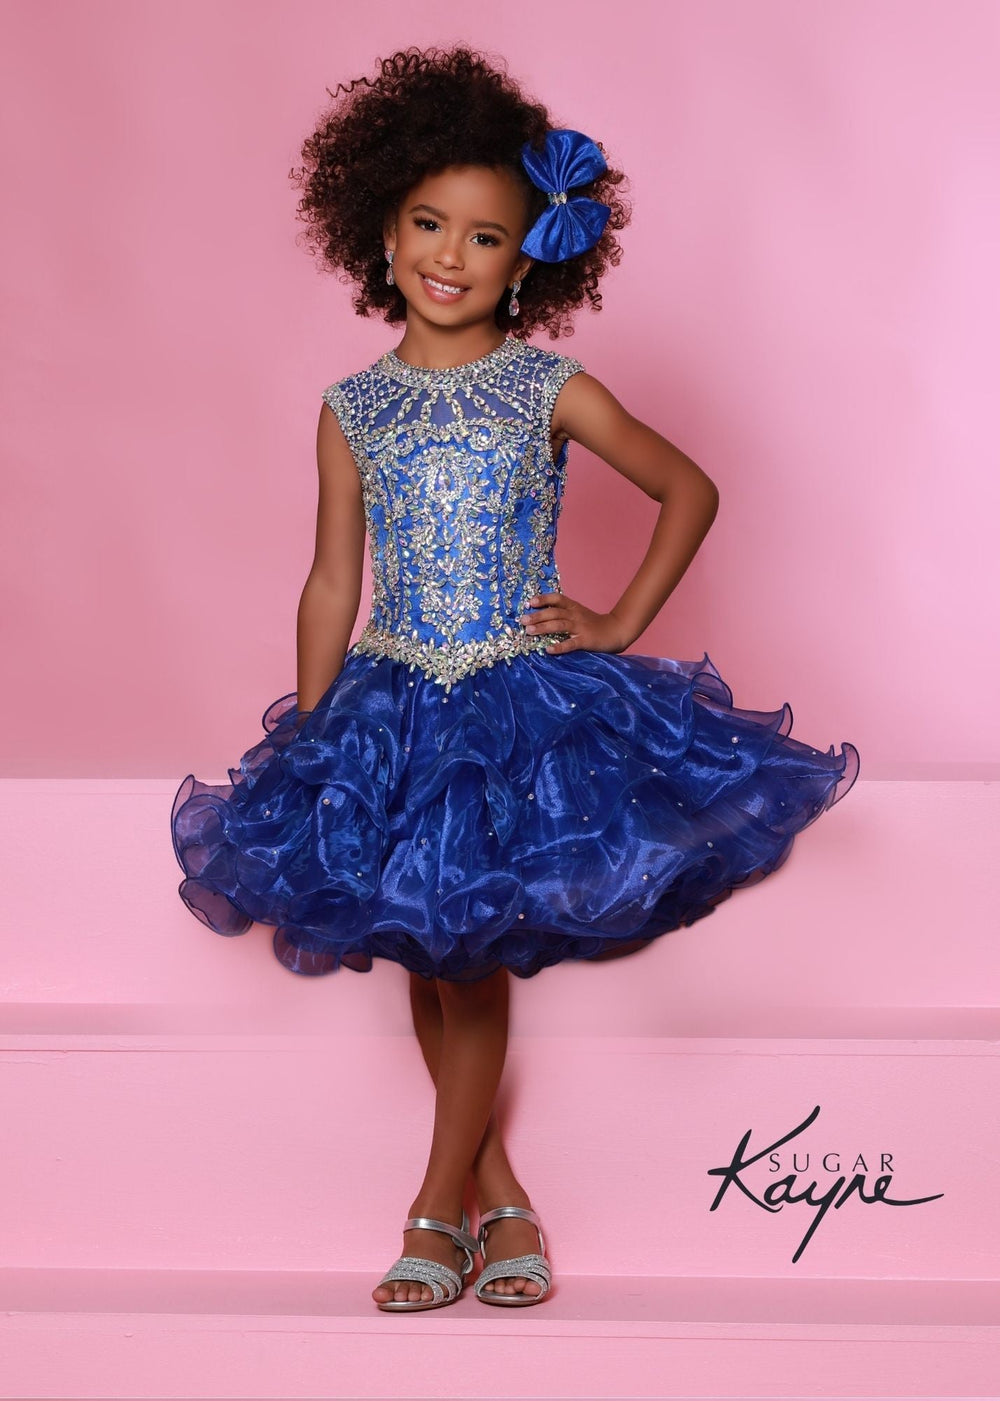 Sugar Kayne C210 Short Ruffle Girls Cupcake Pageant Dress Corset Toddler Baby Formal Gown - FOSTANI